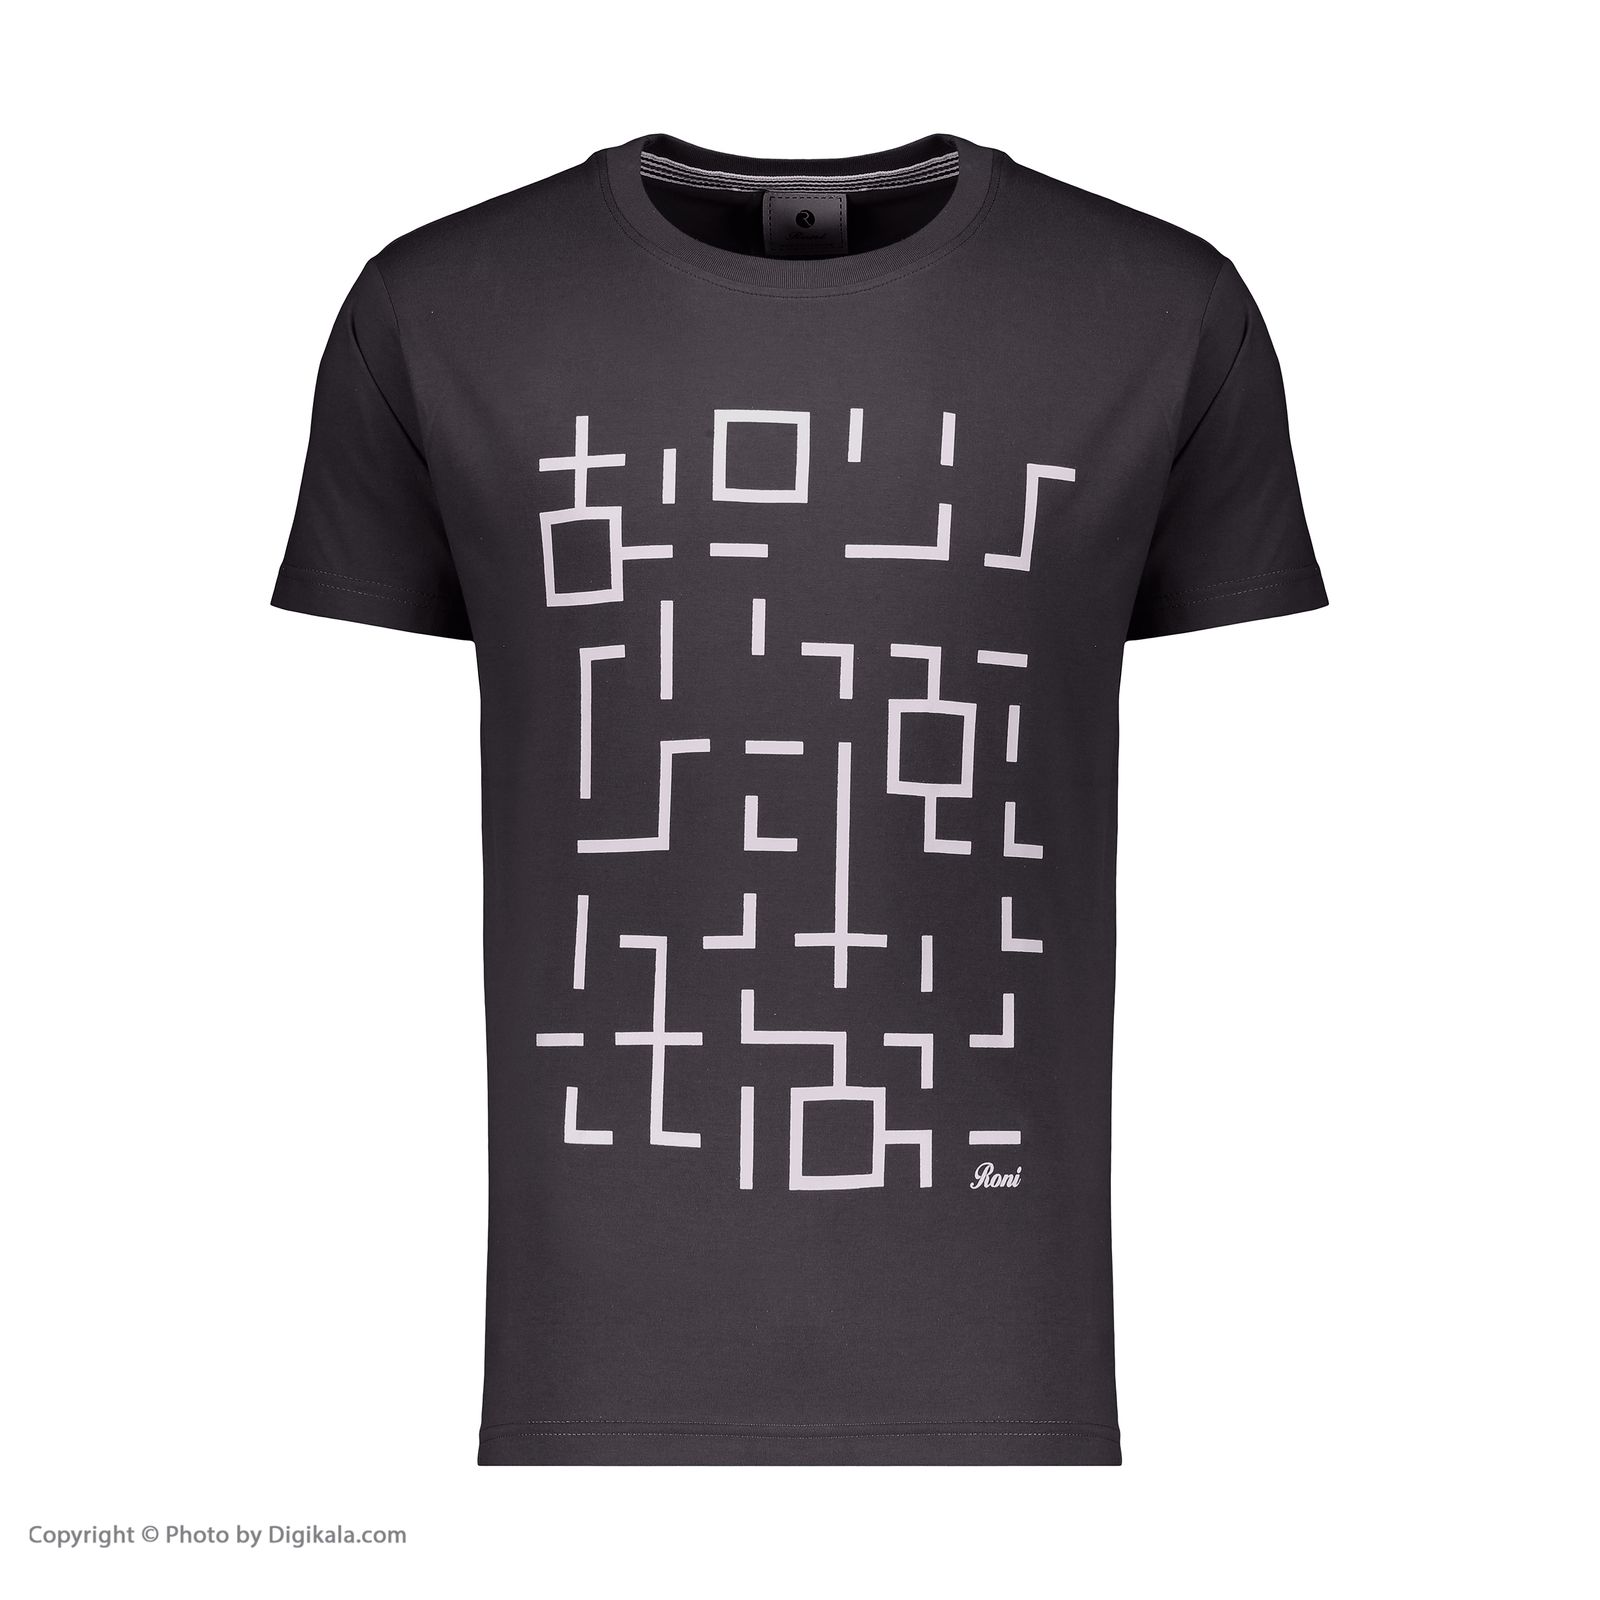 تی شرت آستین کوتاه مردانه رونی مدل 31770019-33 -  - 2